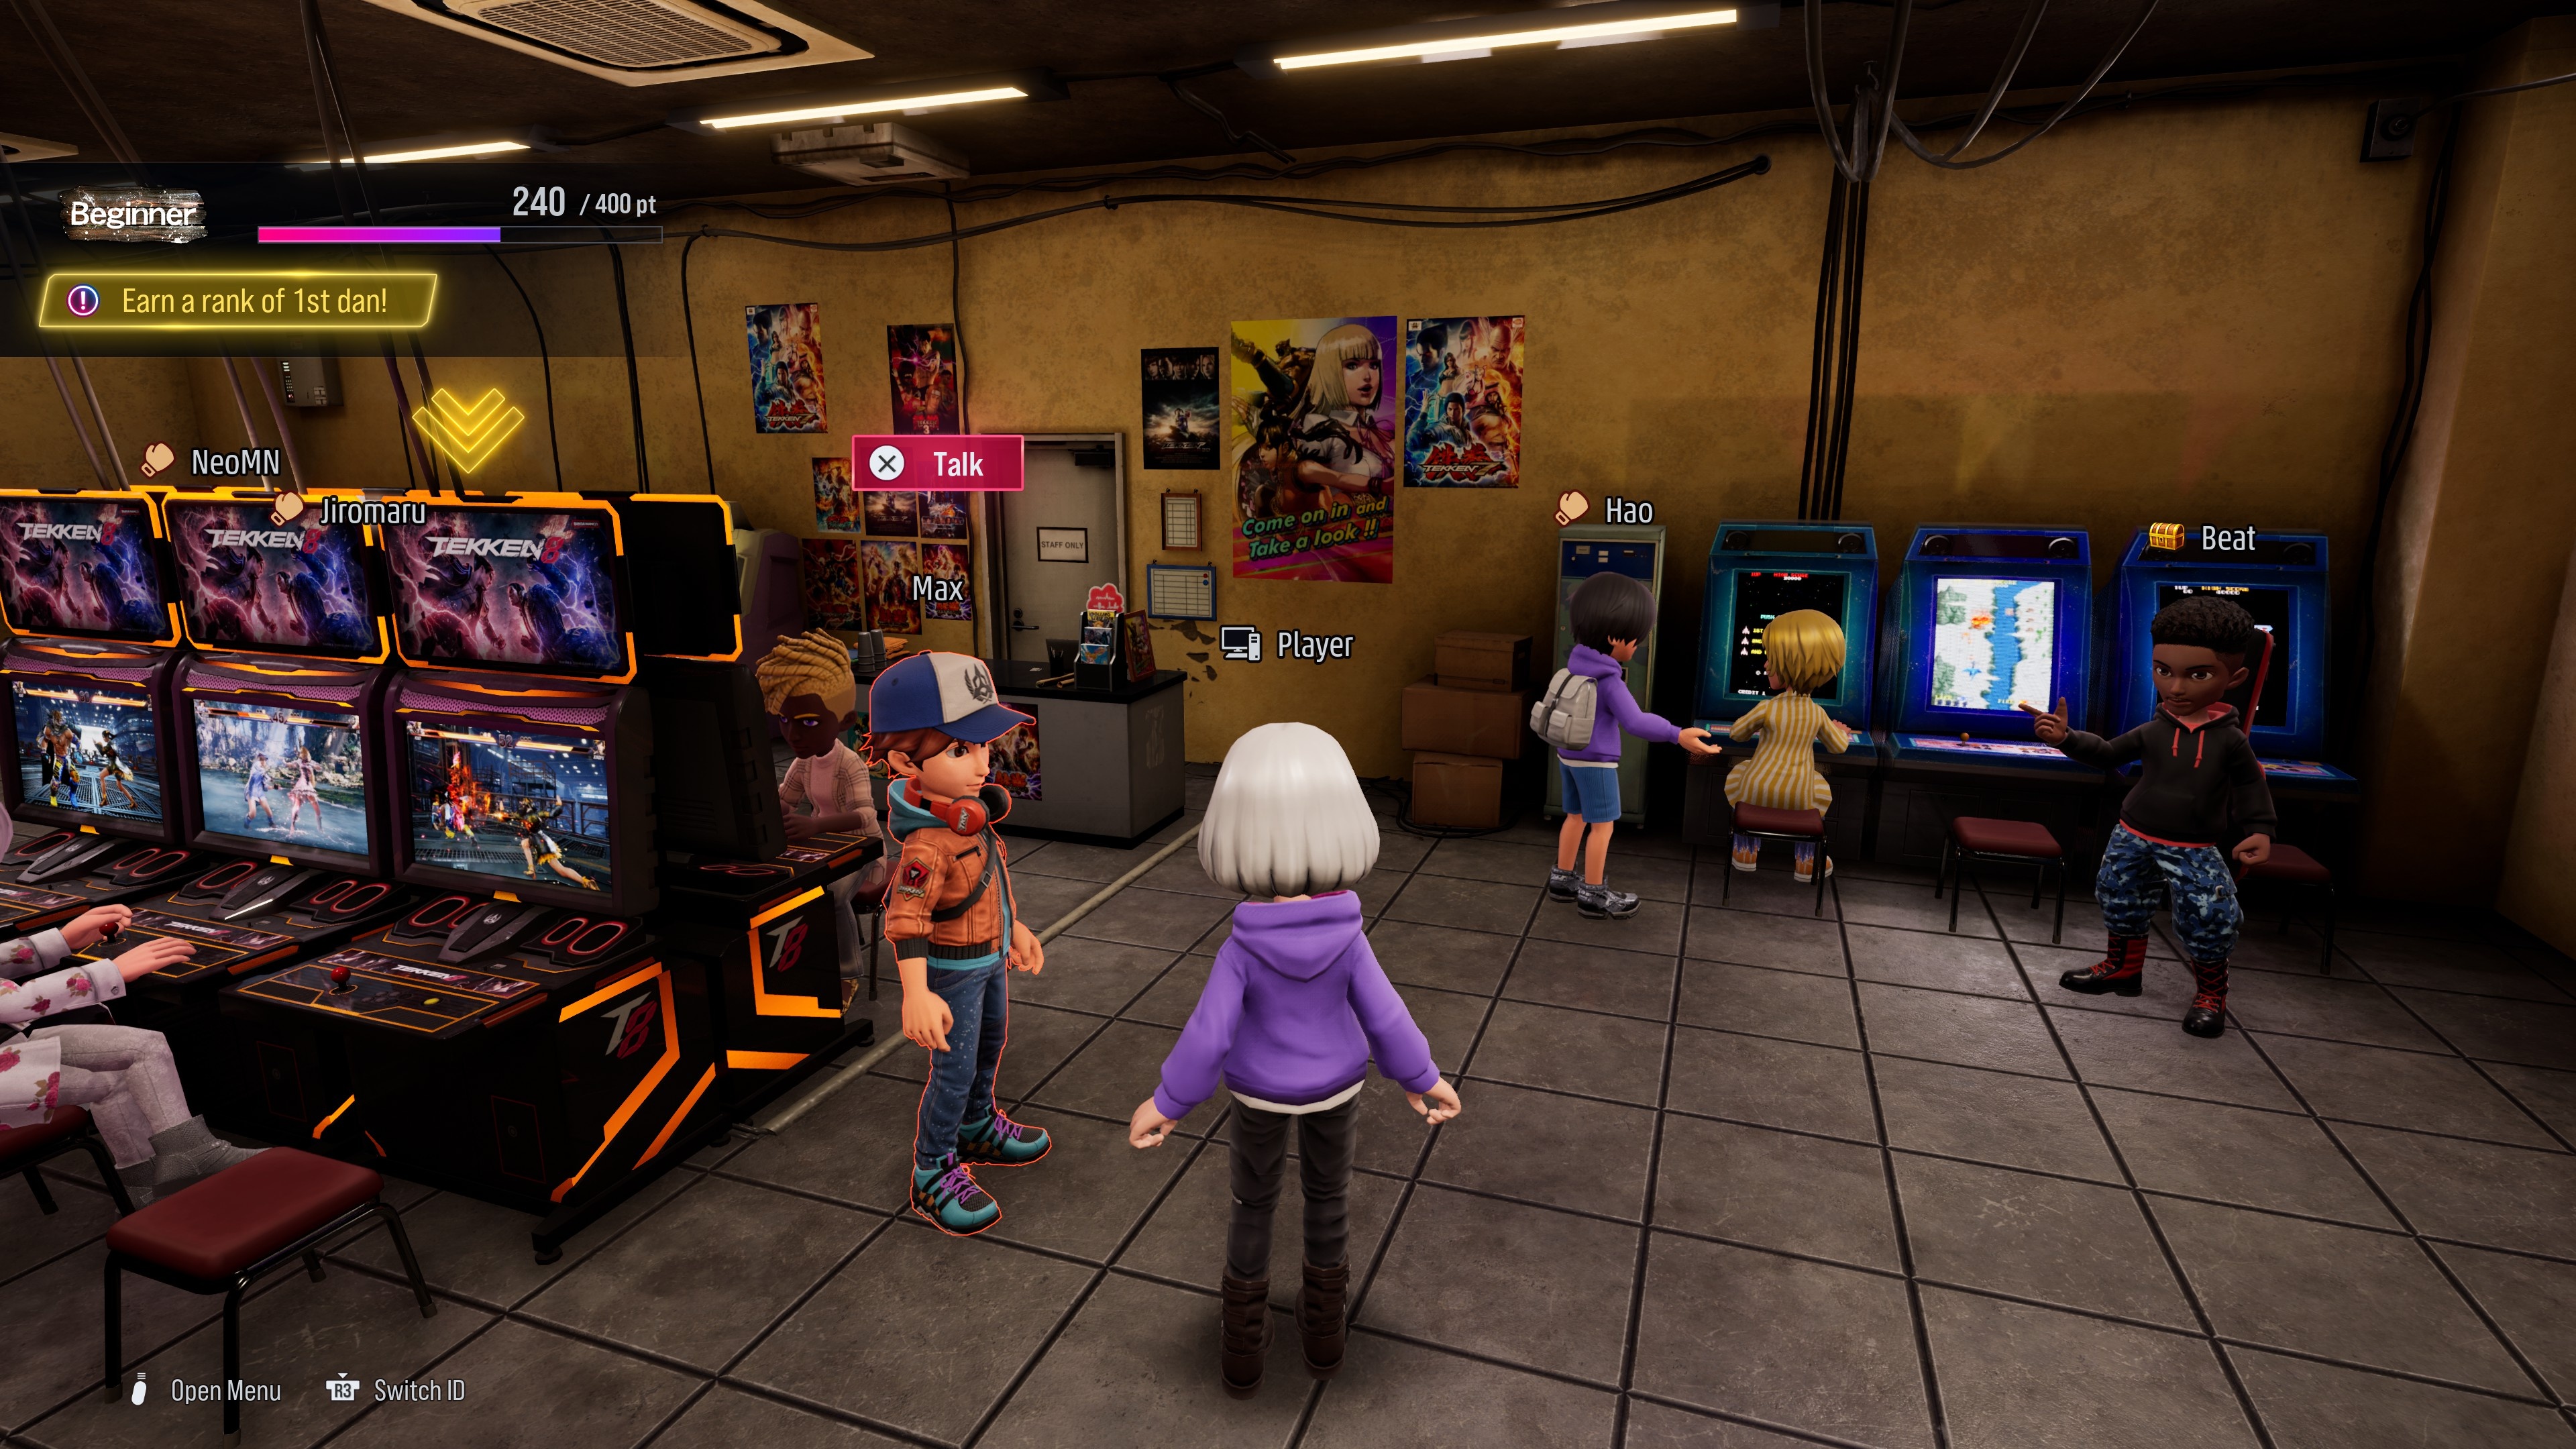 (Arcade Quest is een gloednieuwe spelmodus waarin je een avatar kunt maken en daarmee op avontuur kunt gaan in een virtuele arcadehal die losstaat van de hoofdgame)